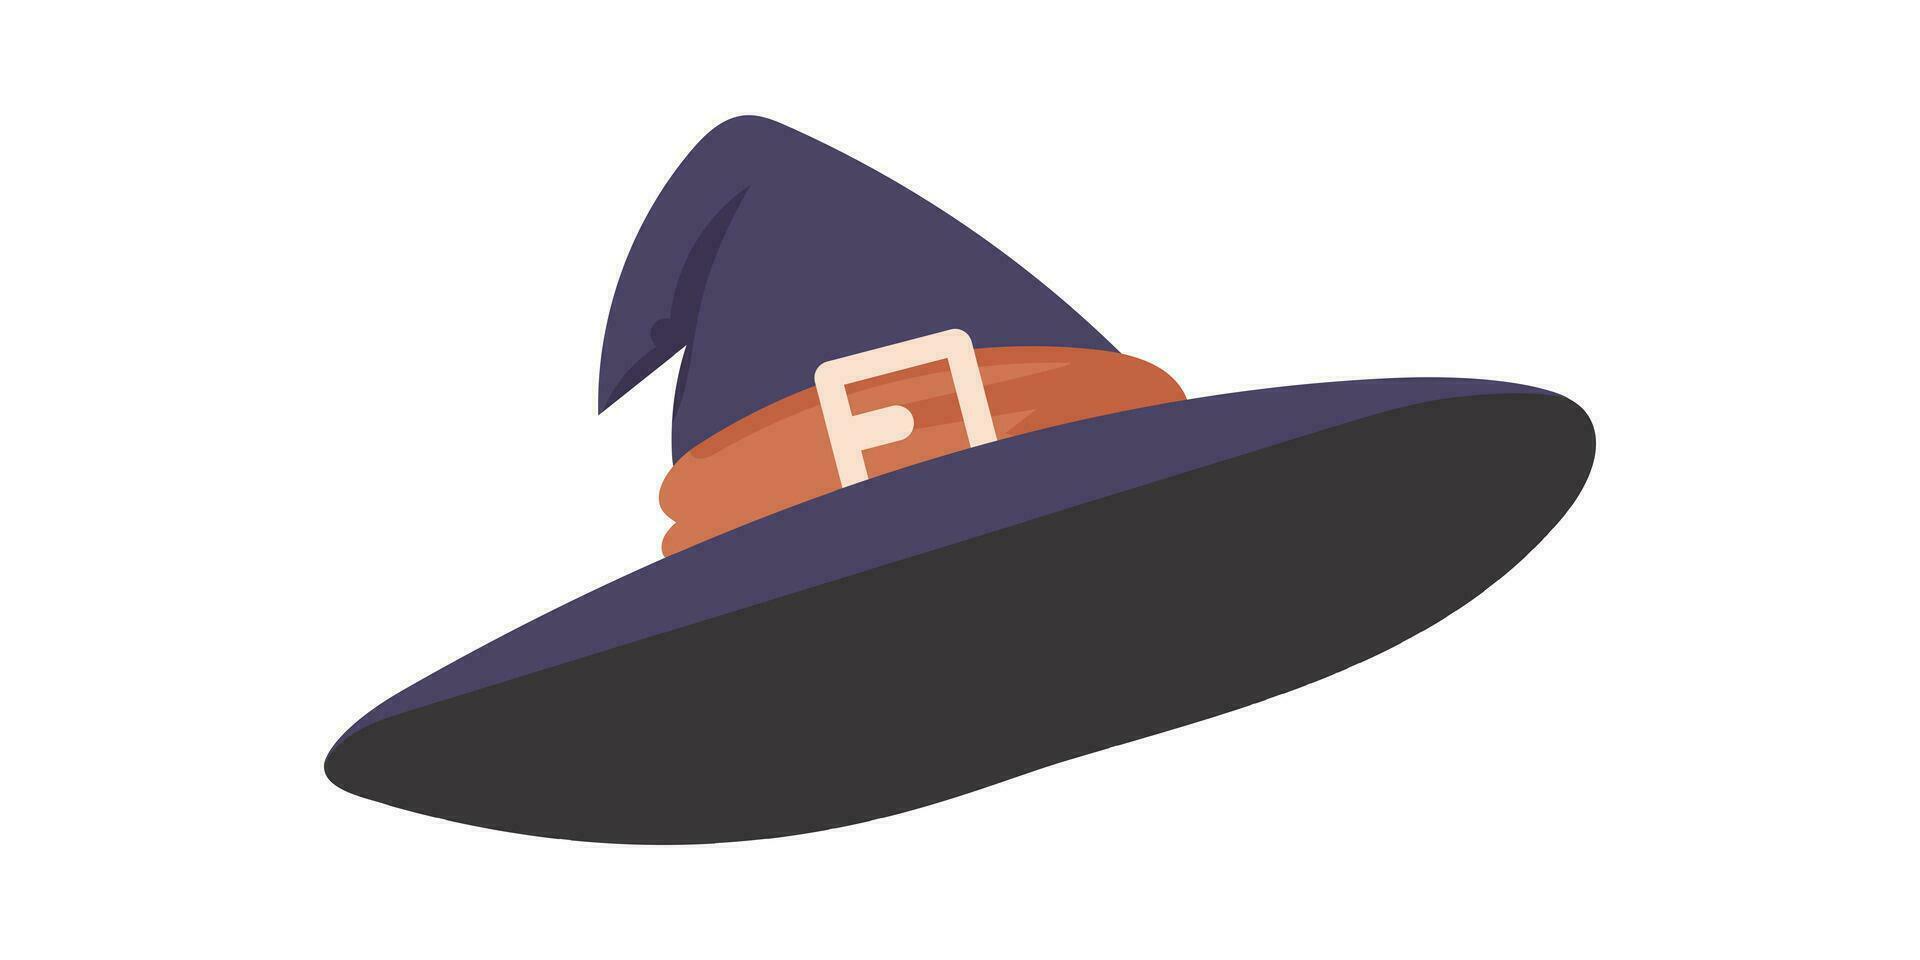 een groot, wees hoed dat heksen slijtage Aan hun hoofden. een hoed voor halloween dat looks Leuk vinden een basketbal kap. tekenfilm stijl, vector illustratie